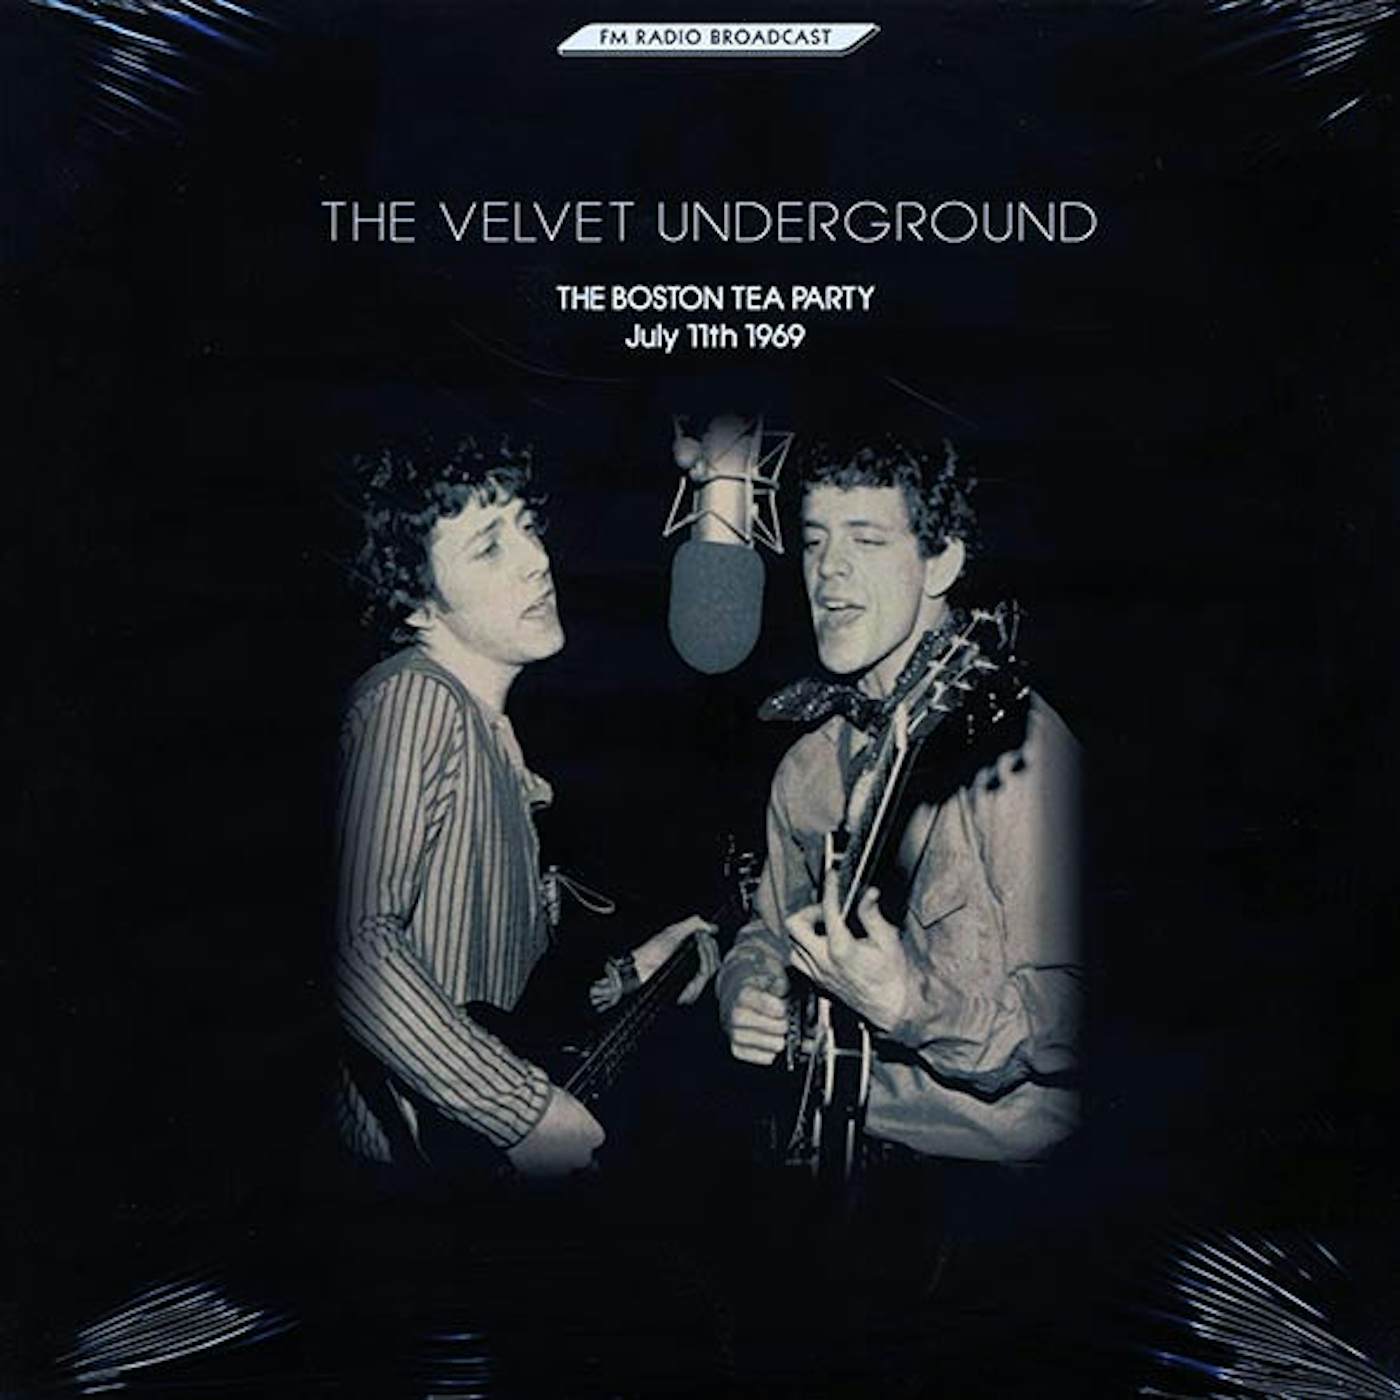 The Velvet Underground Golden Archive CD